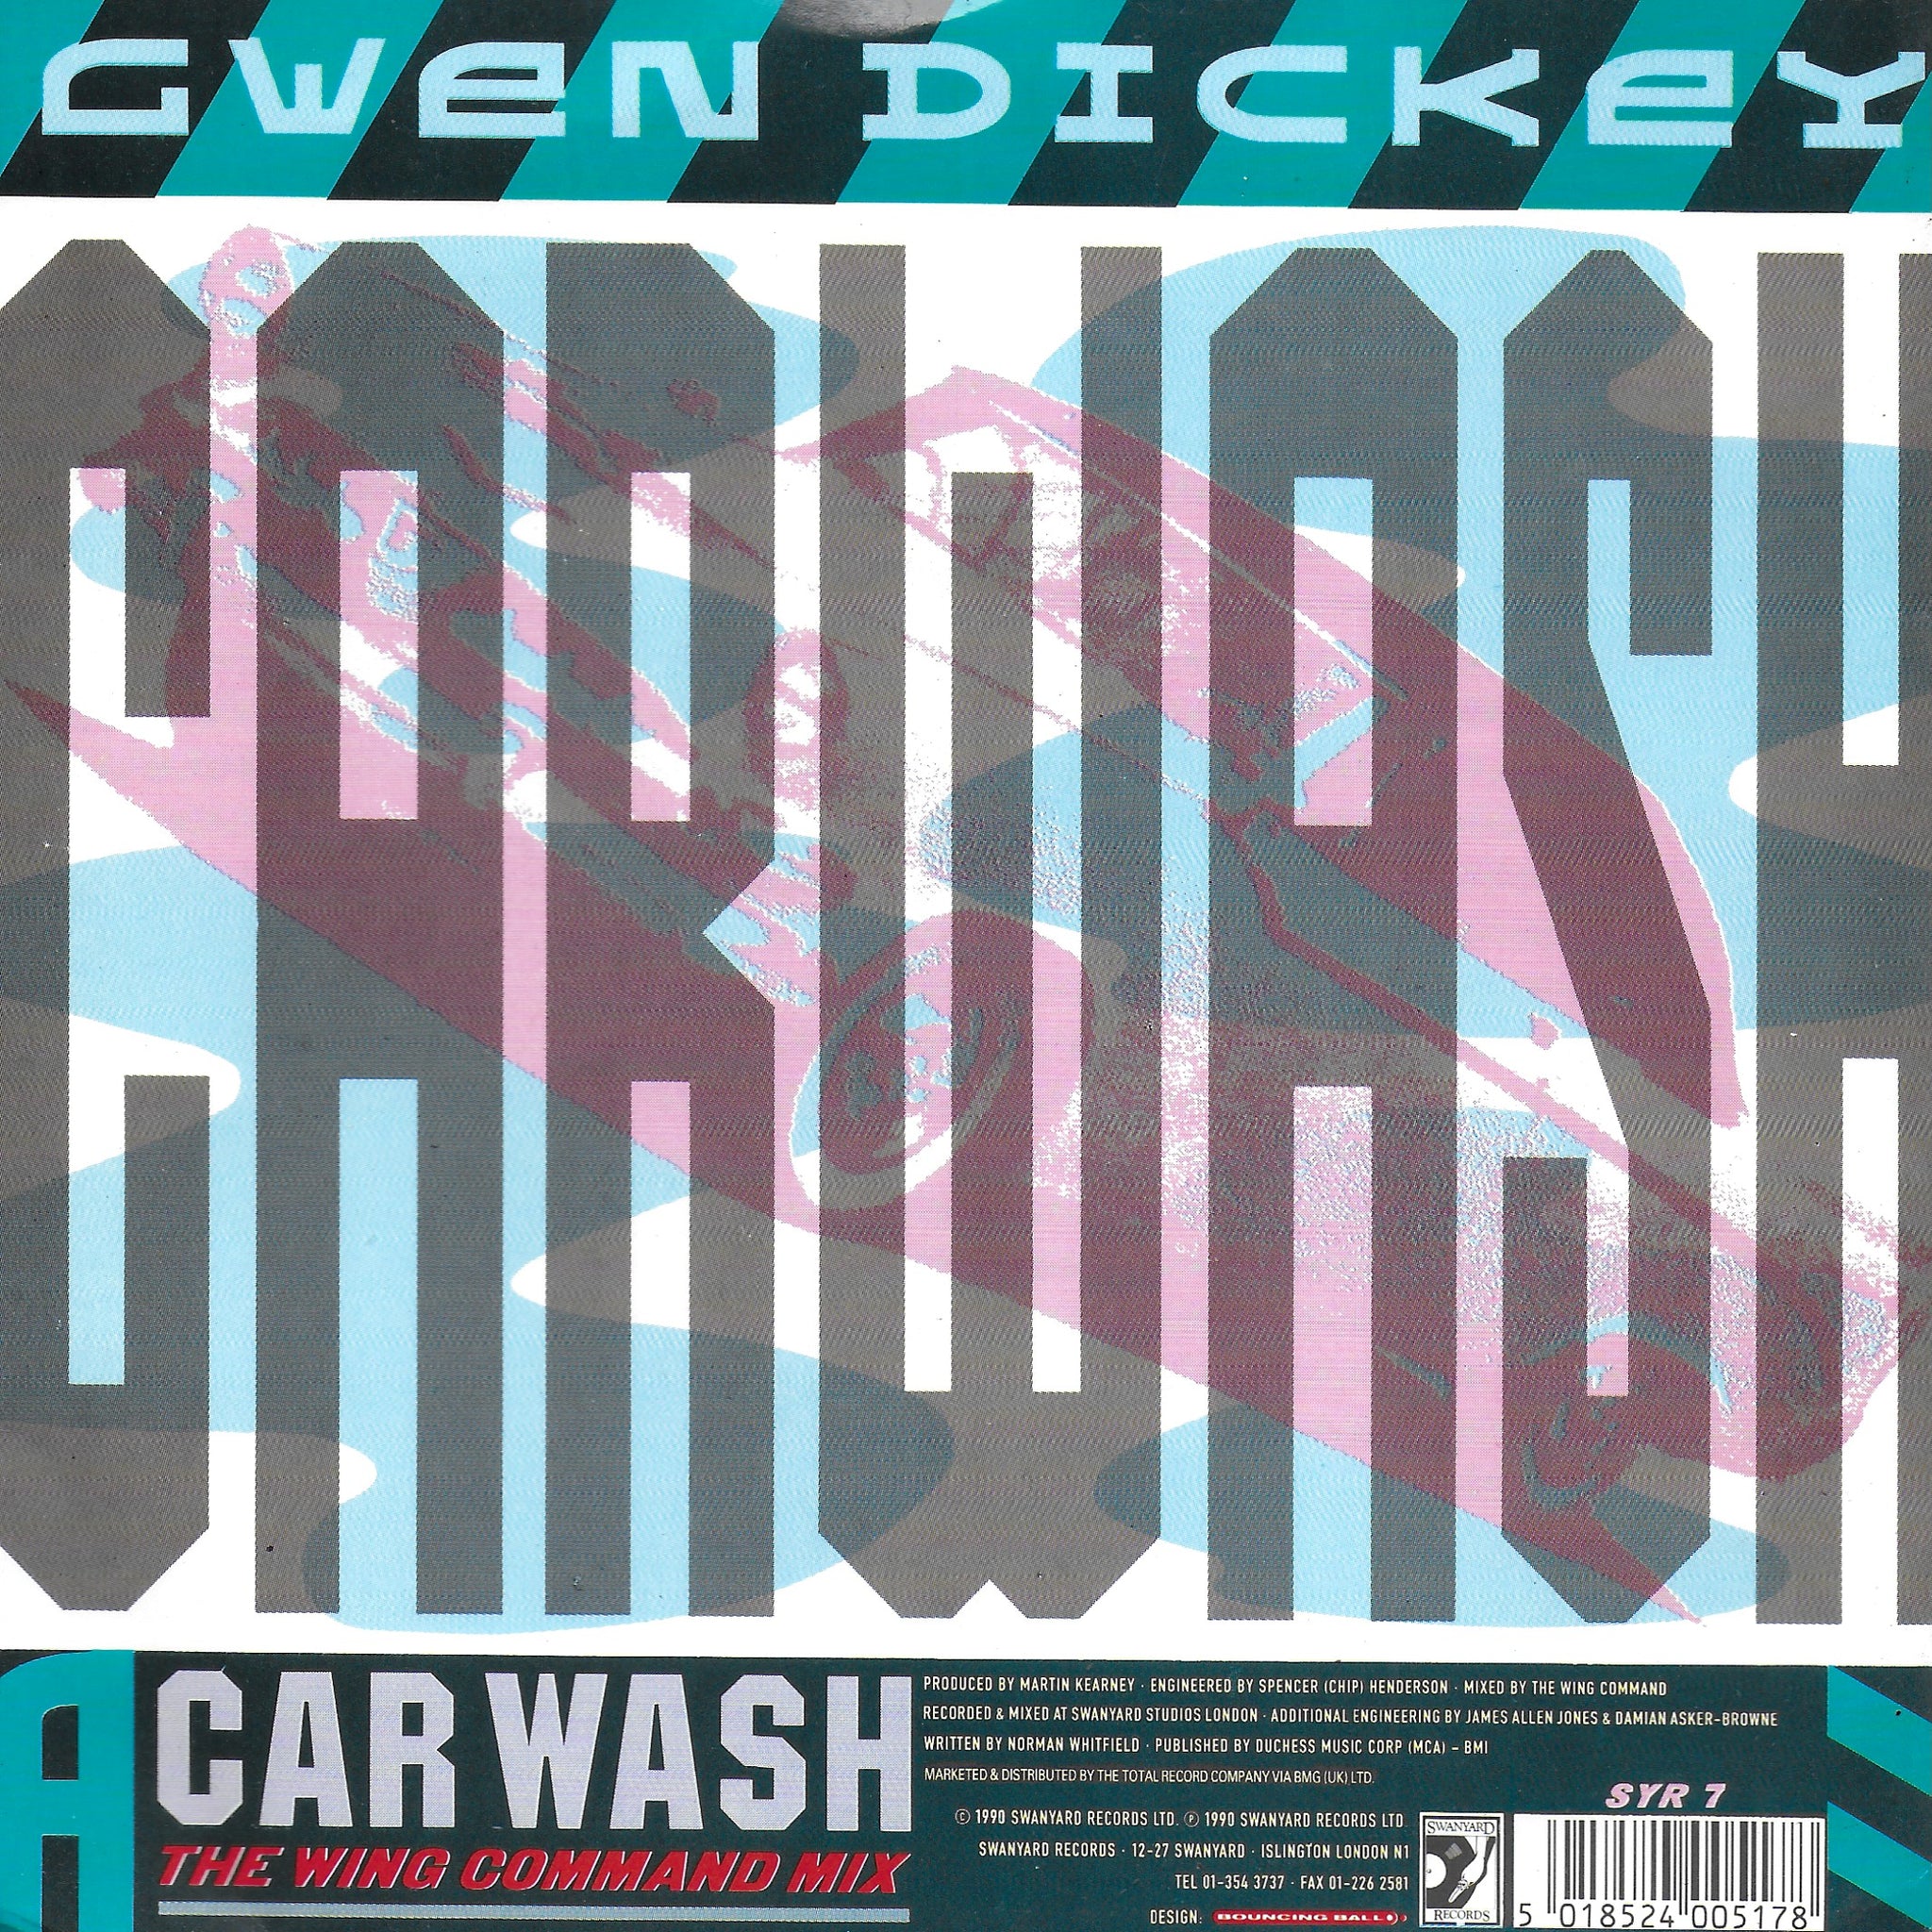 Gwen Dickey - Car wash / Wishing on a star (Engelse uitgave)